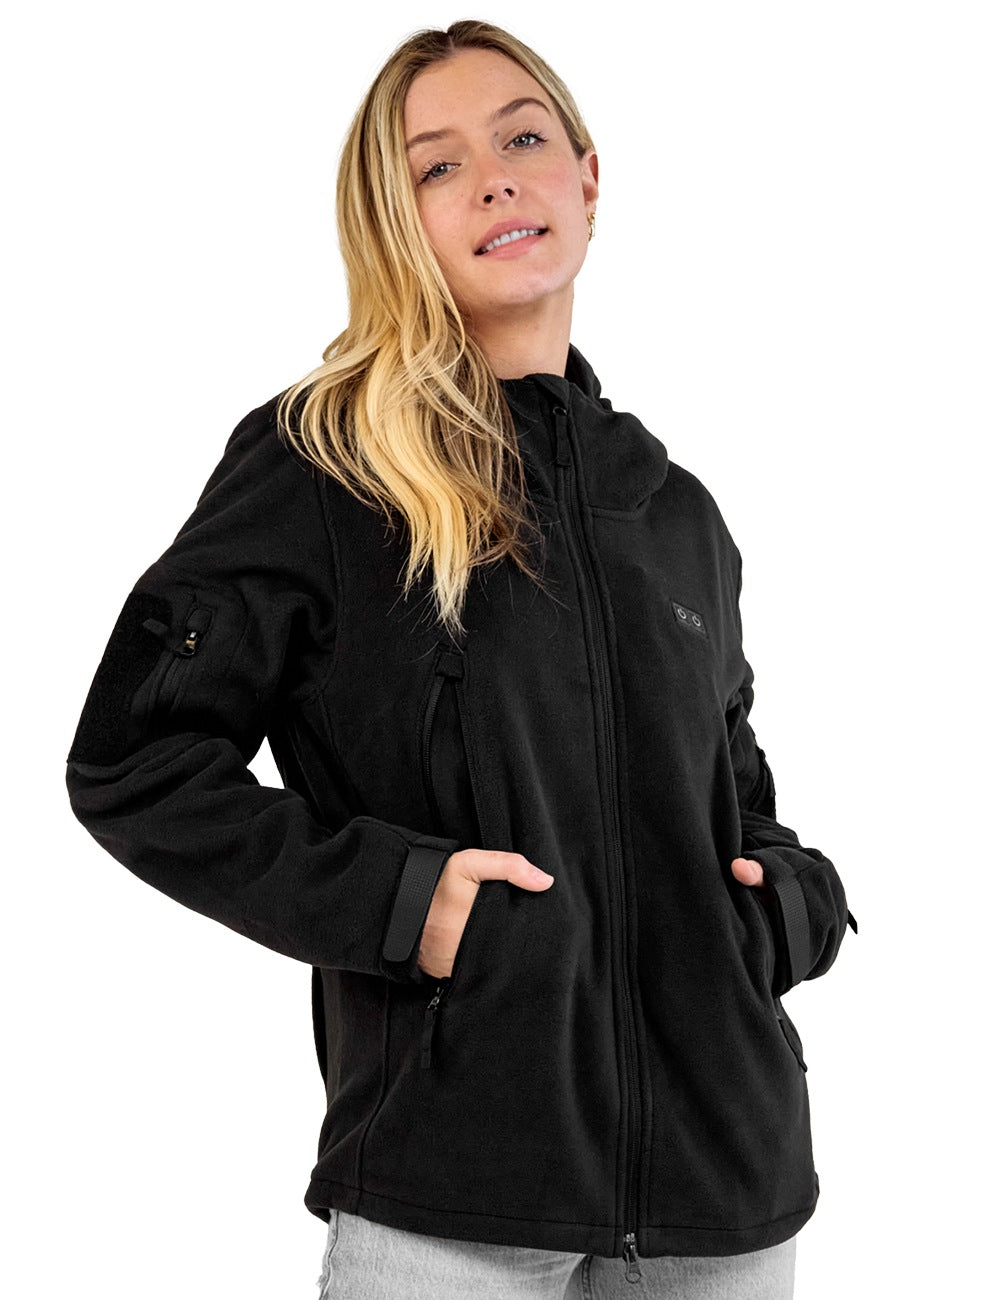 ANTARCTICA GEAR Heated Jacket, Polar Fleece Coat for Women